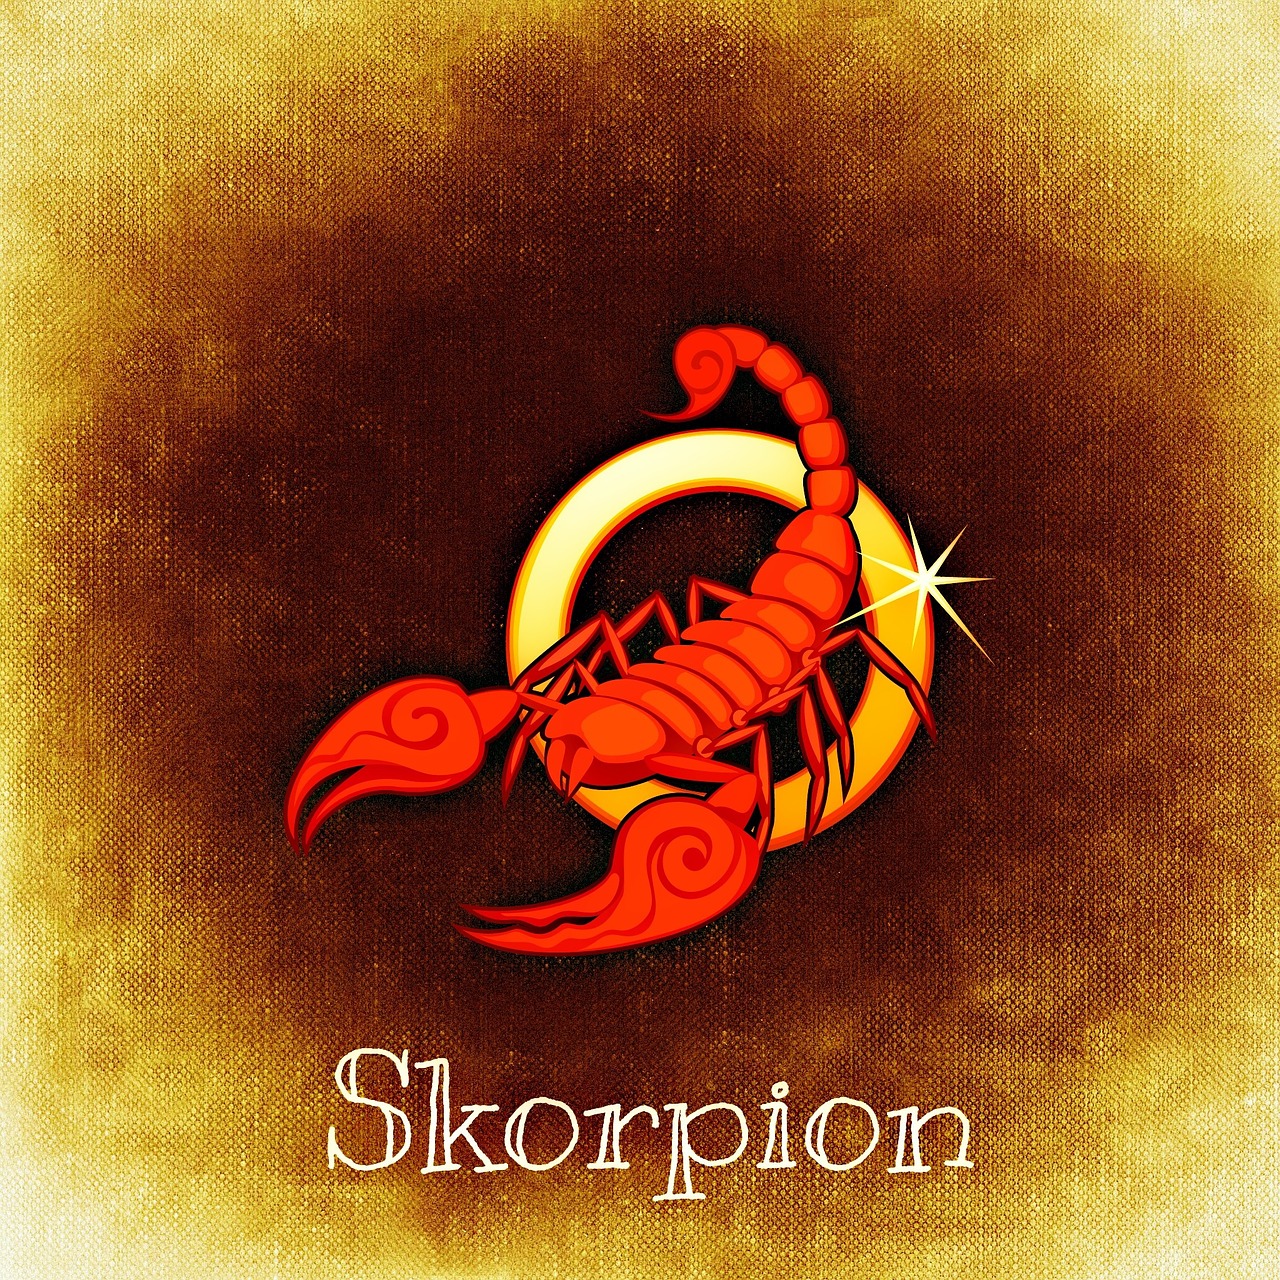 Skorpion mann antwortet nicht